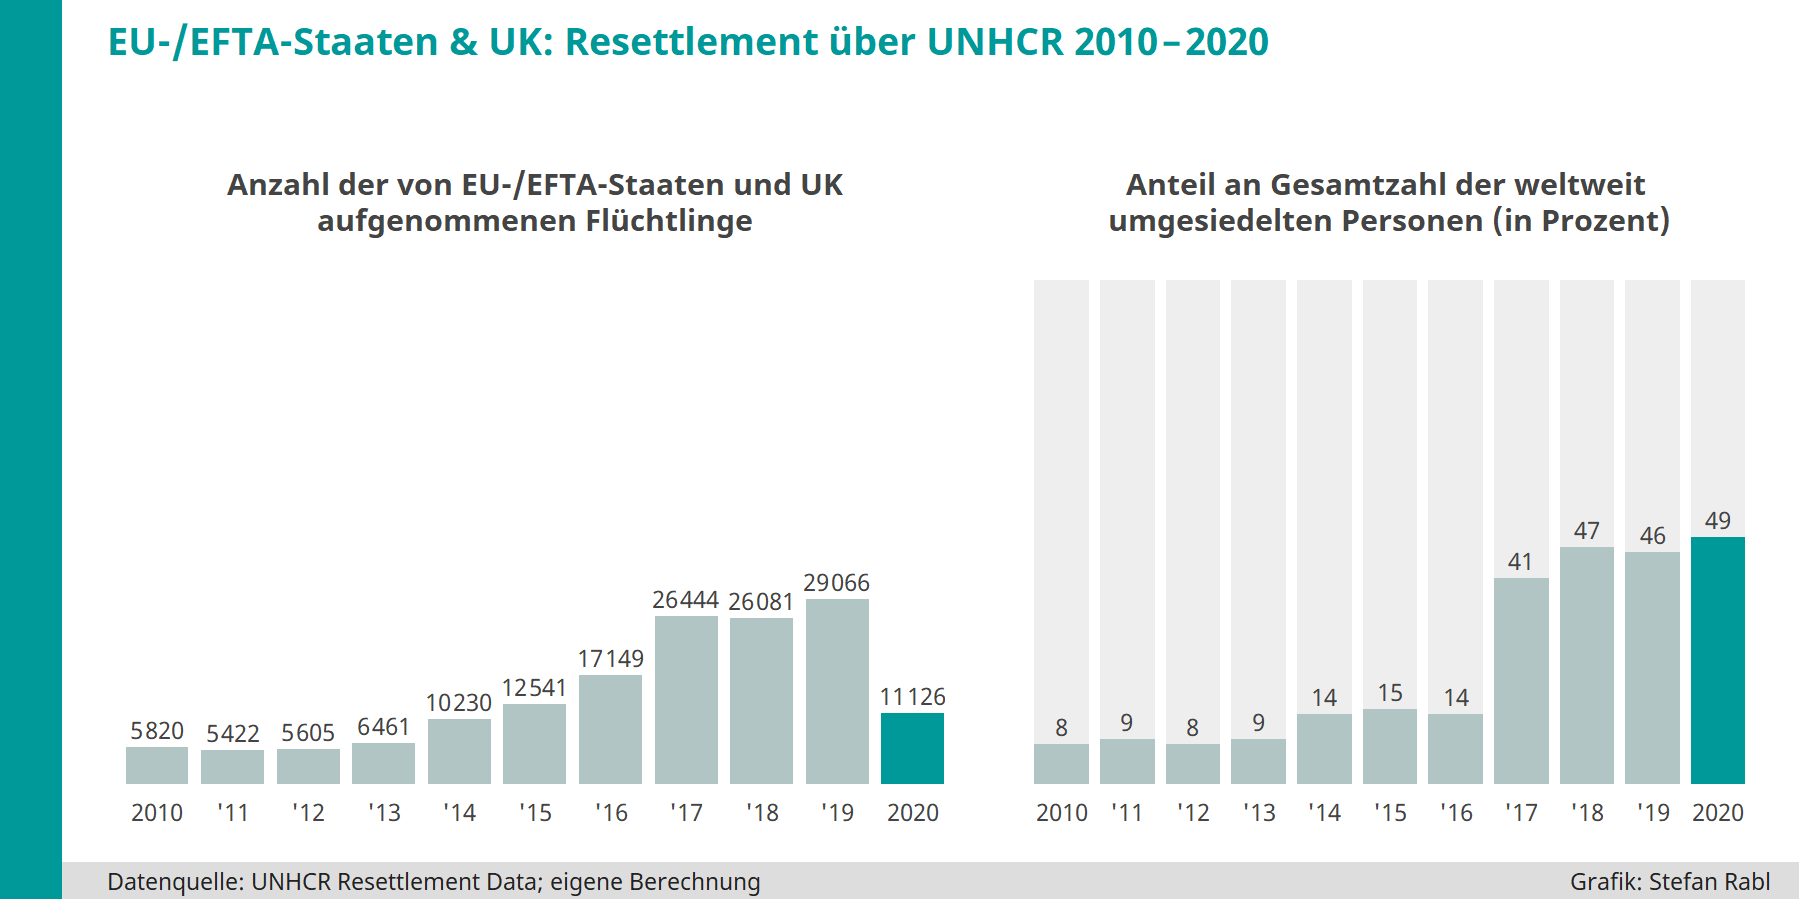 Grafik: EU/EFTA/UK - Über Resettlement seit 2010 pro Jahr aufgenommene Flüchtlinge